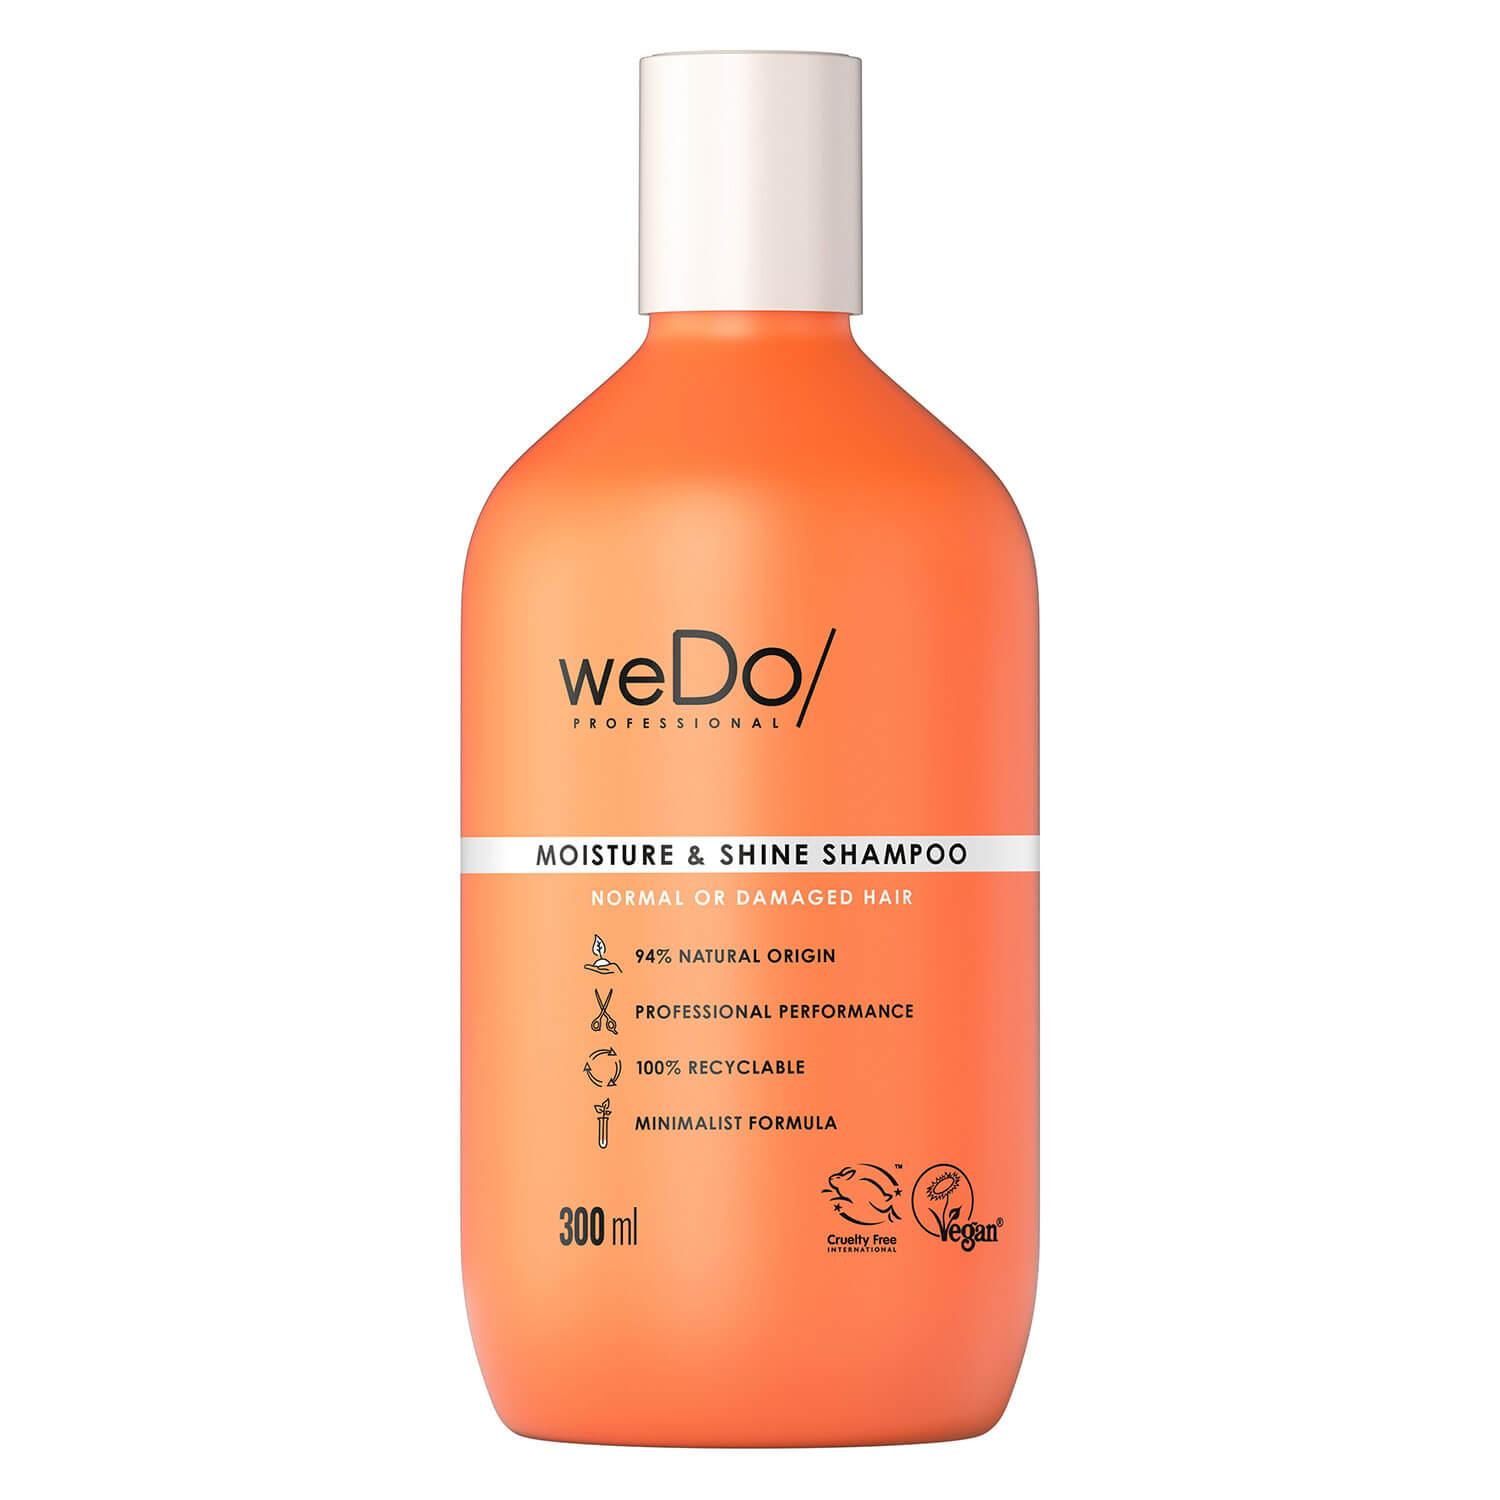 weDo/ - Moisture & Shine Shampoo